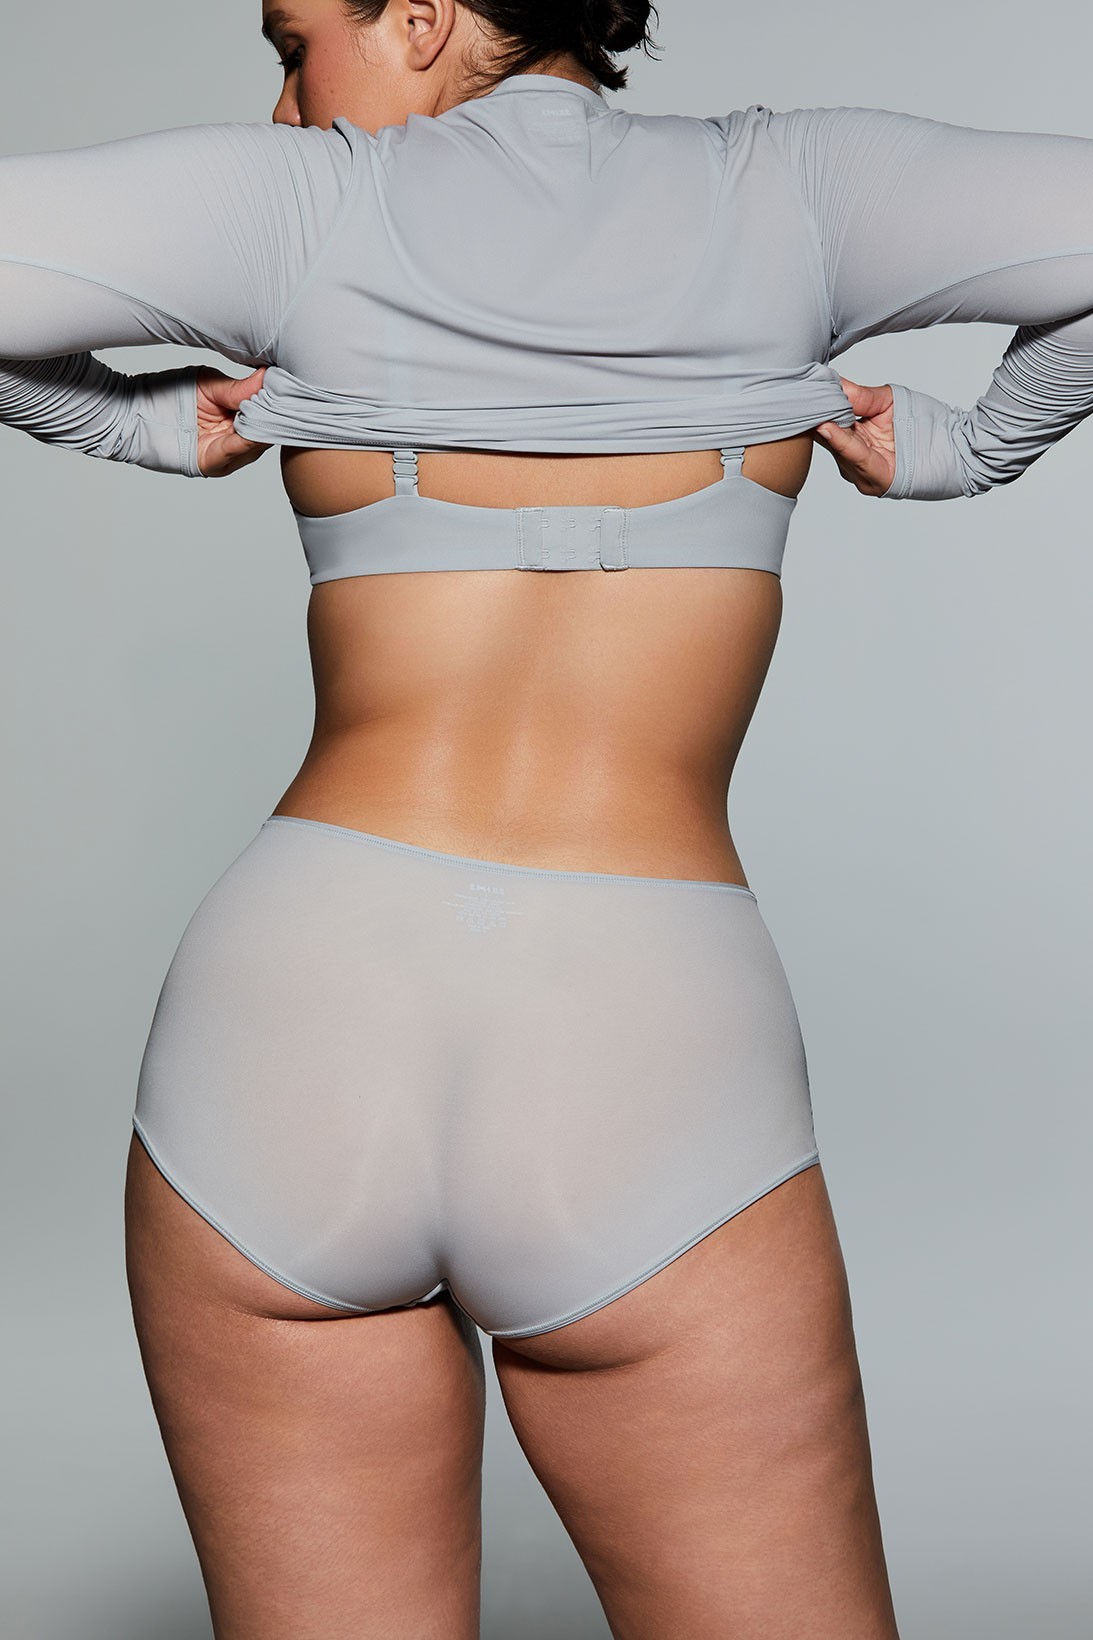 Ким Кардашьян добавила новые модели белья в базовую линию Skims (фото 8)